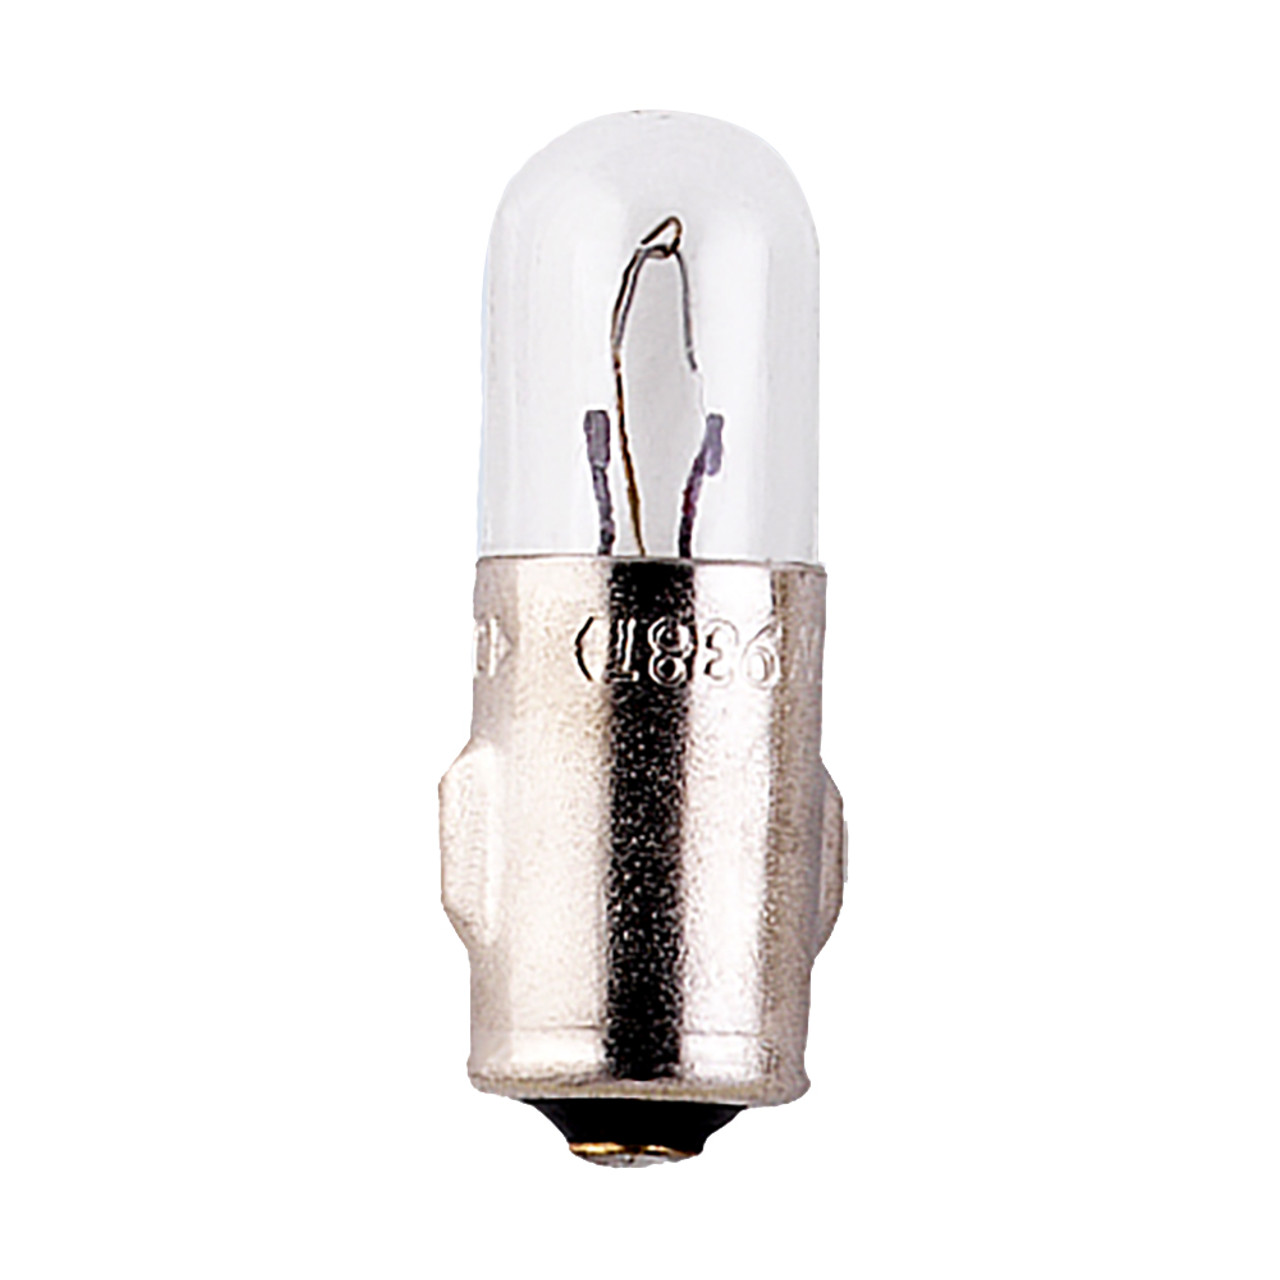 VDO Type A - White Metal Base Bulb - 12V - 4Pack [600-802]